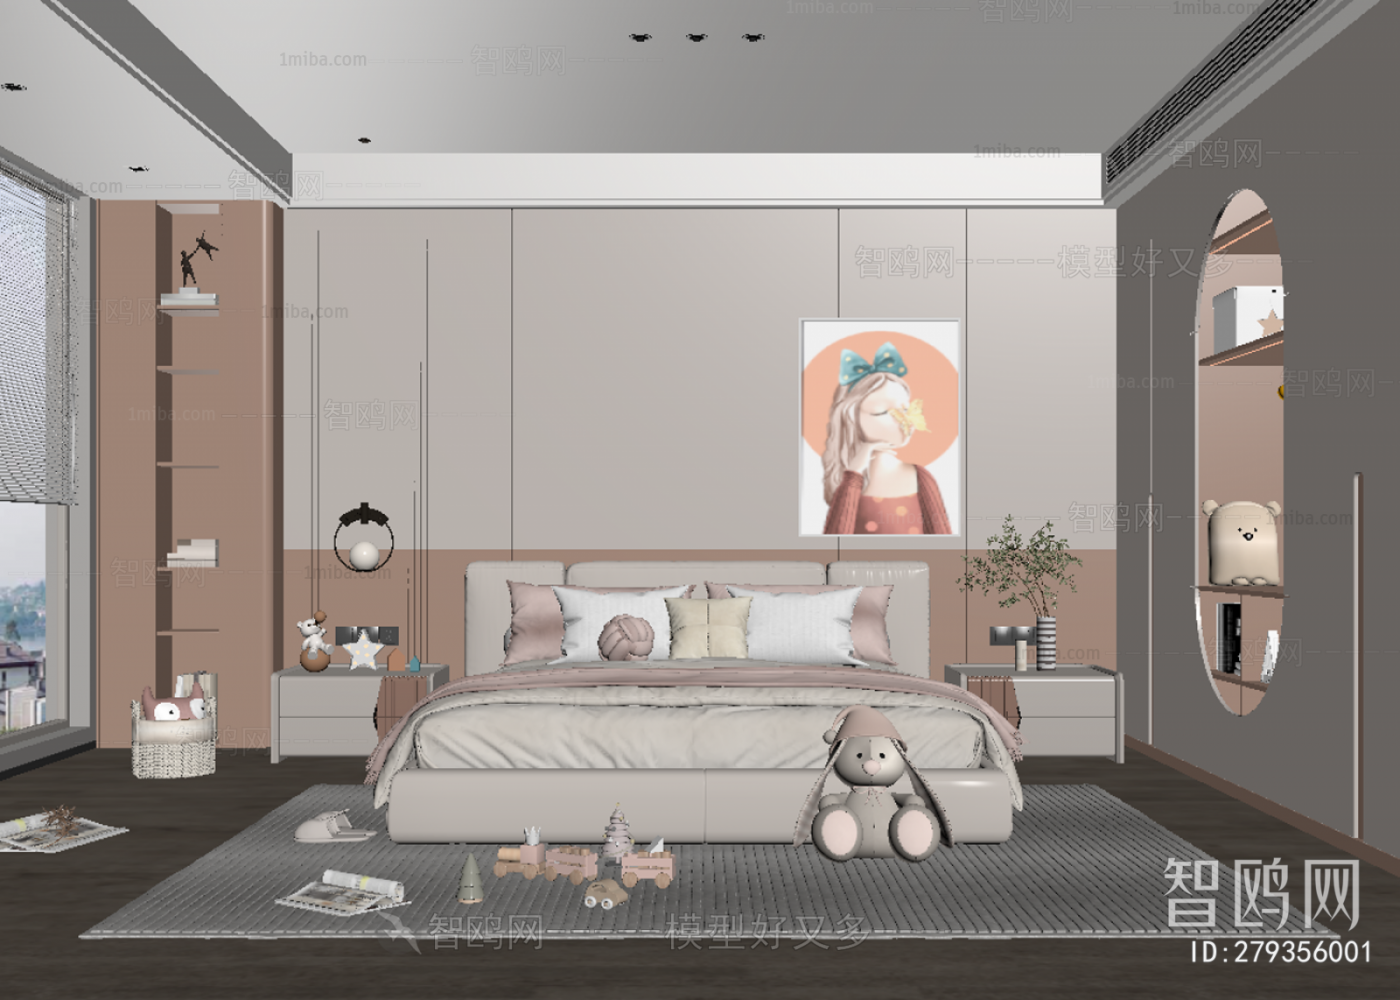 Modern Girl's Room Daughter's Room